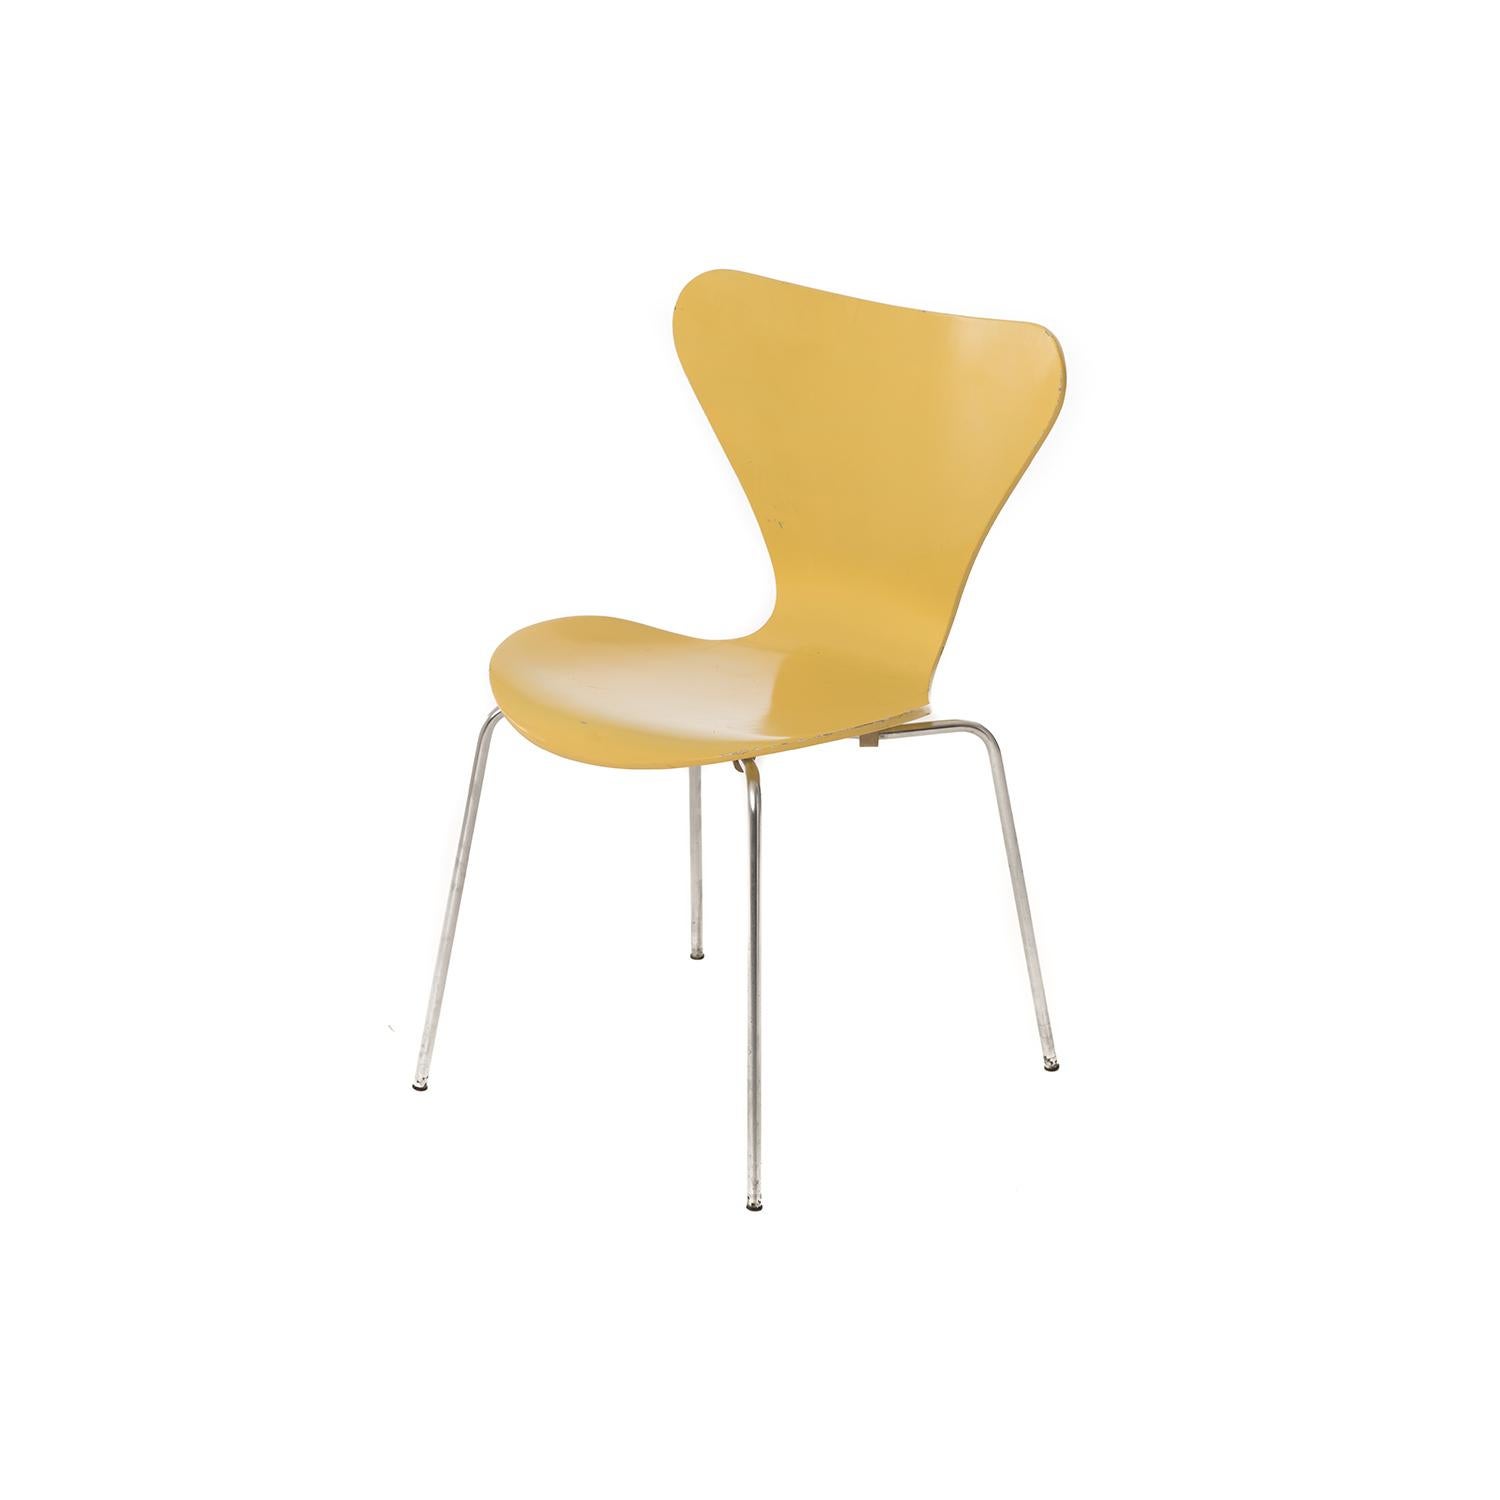 Scandinavian Modern Danish Modern Series 7 Chairs by Arne Jacobsen